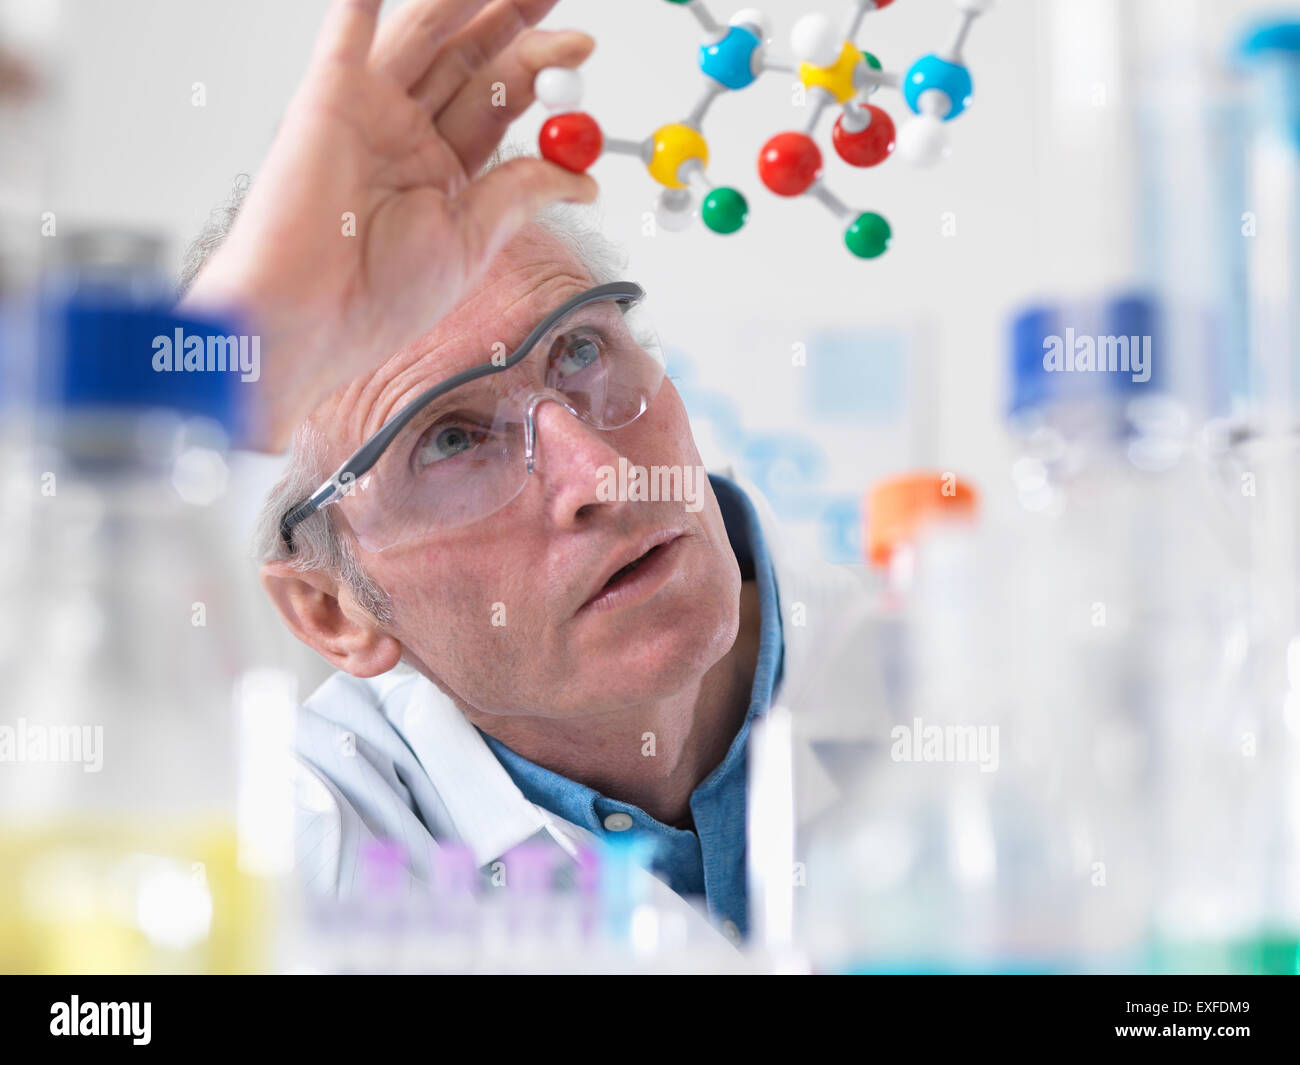 Visualisation scientifique modèle moléculaire d'une formule chimique dans un laboratoire Banque D'Images